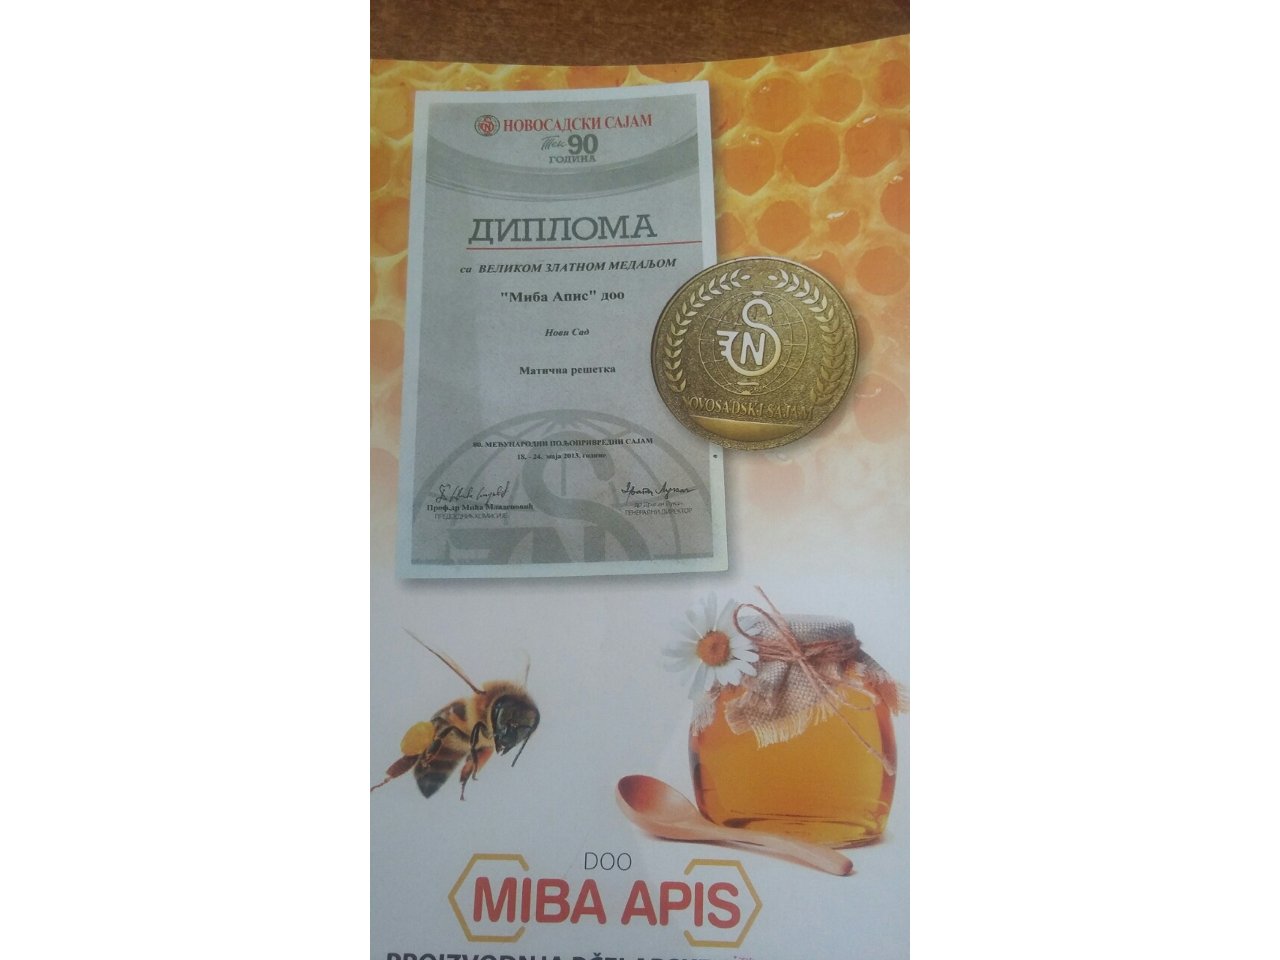 MIBA APIS - PROIZVODNJA PČELARSKOG PRIBORA I OPREME Pčelarstvo Novi Sad - Slika 3